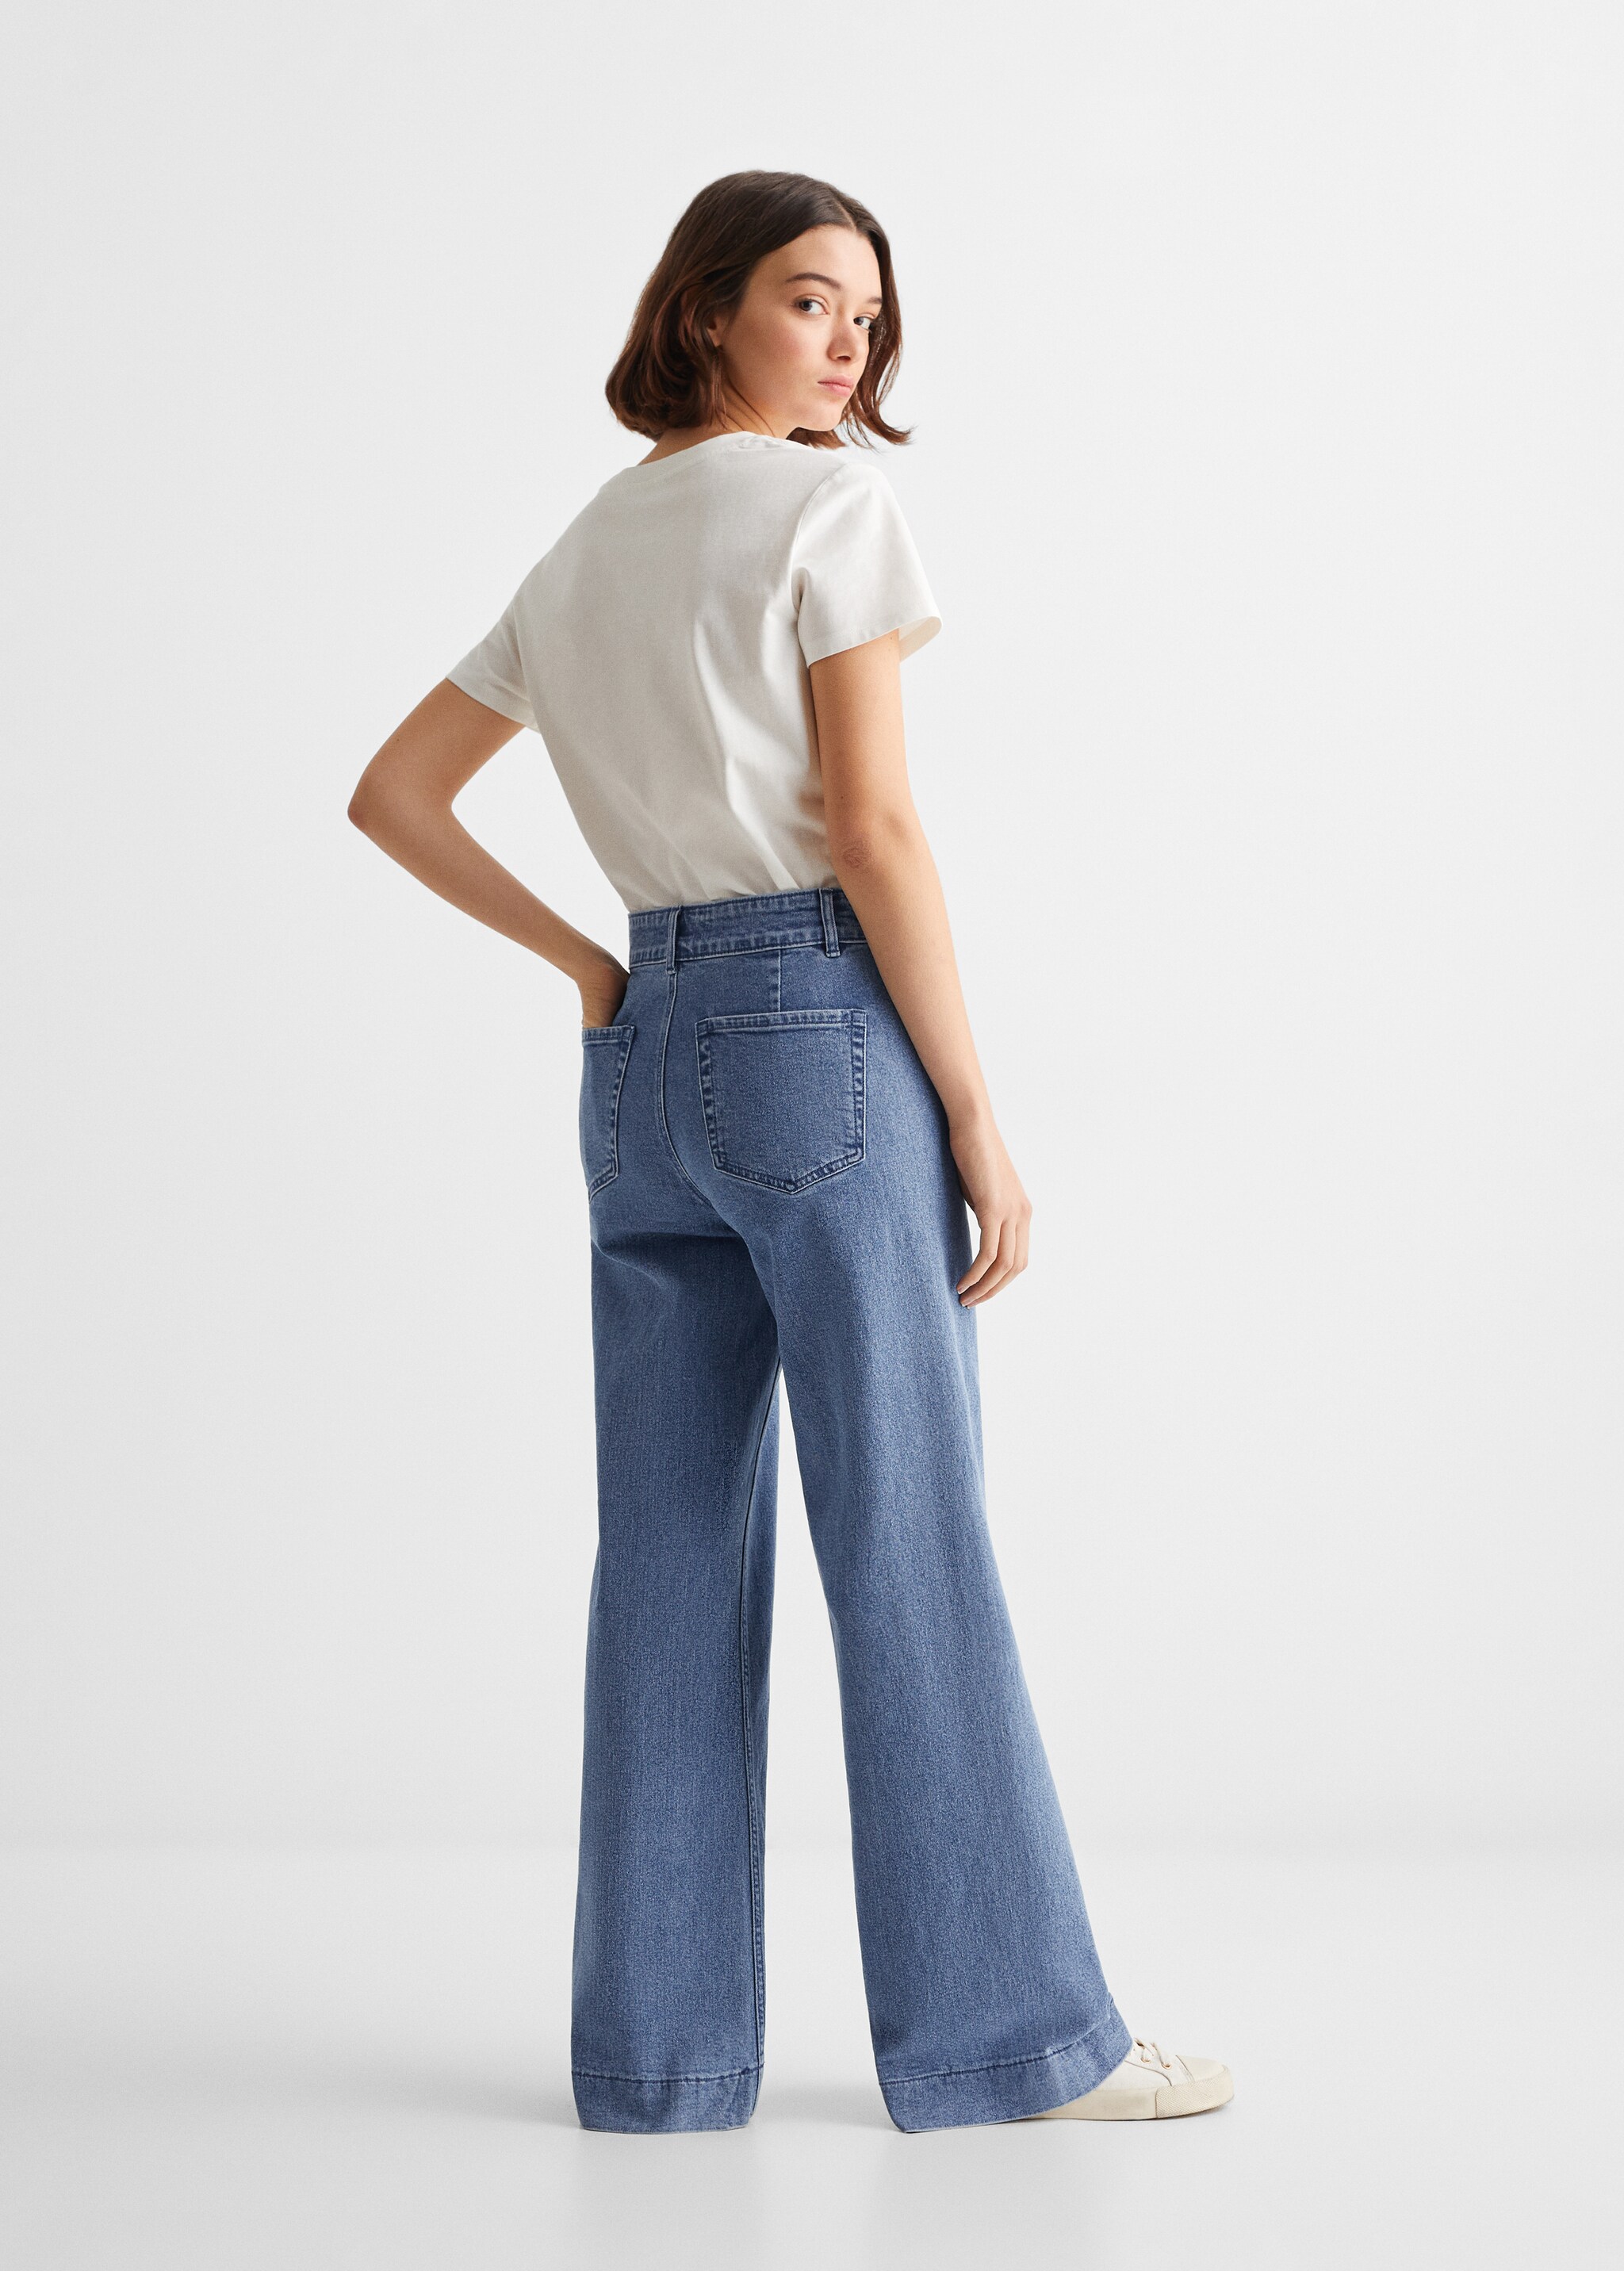 Jeans wideleg costuras decorativas - Reverso del artículo